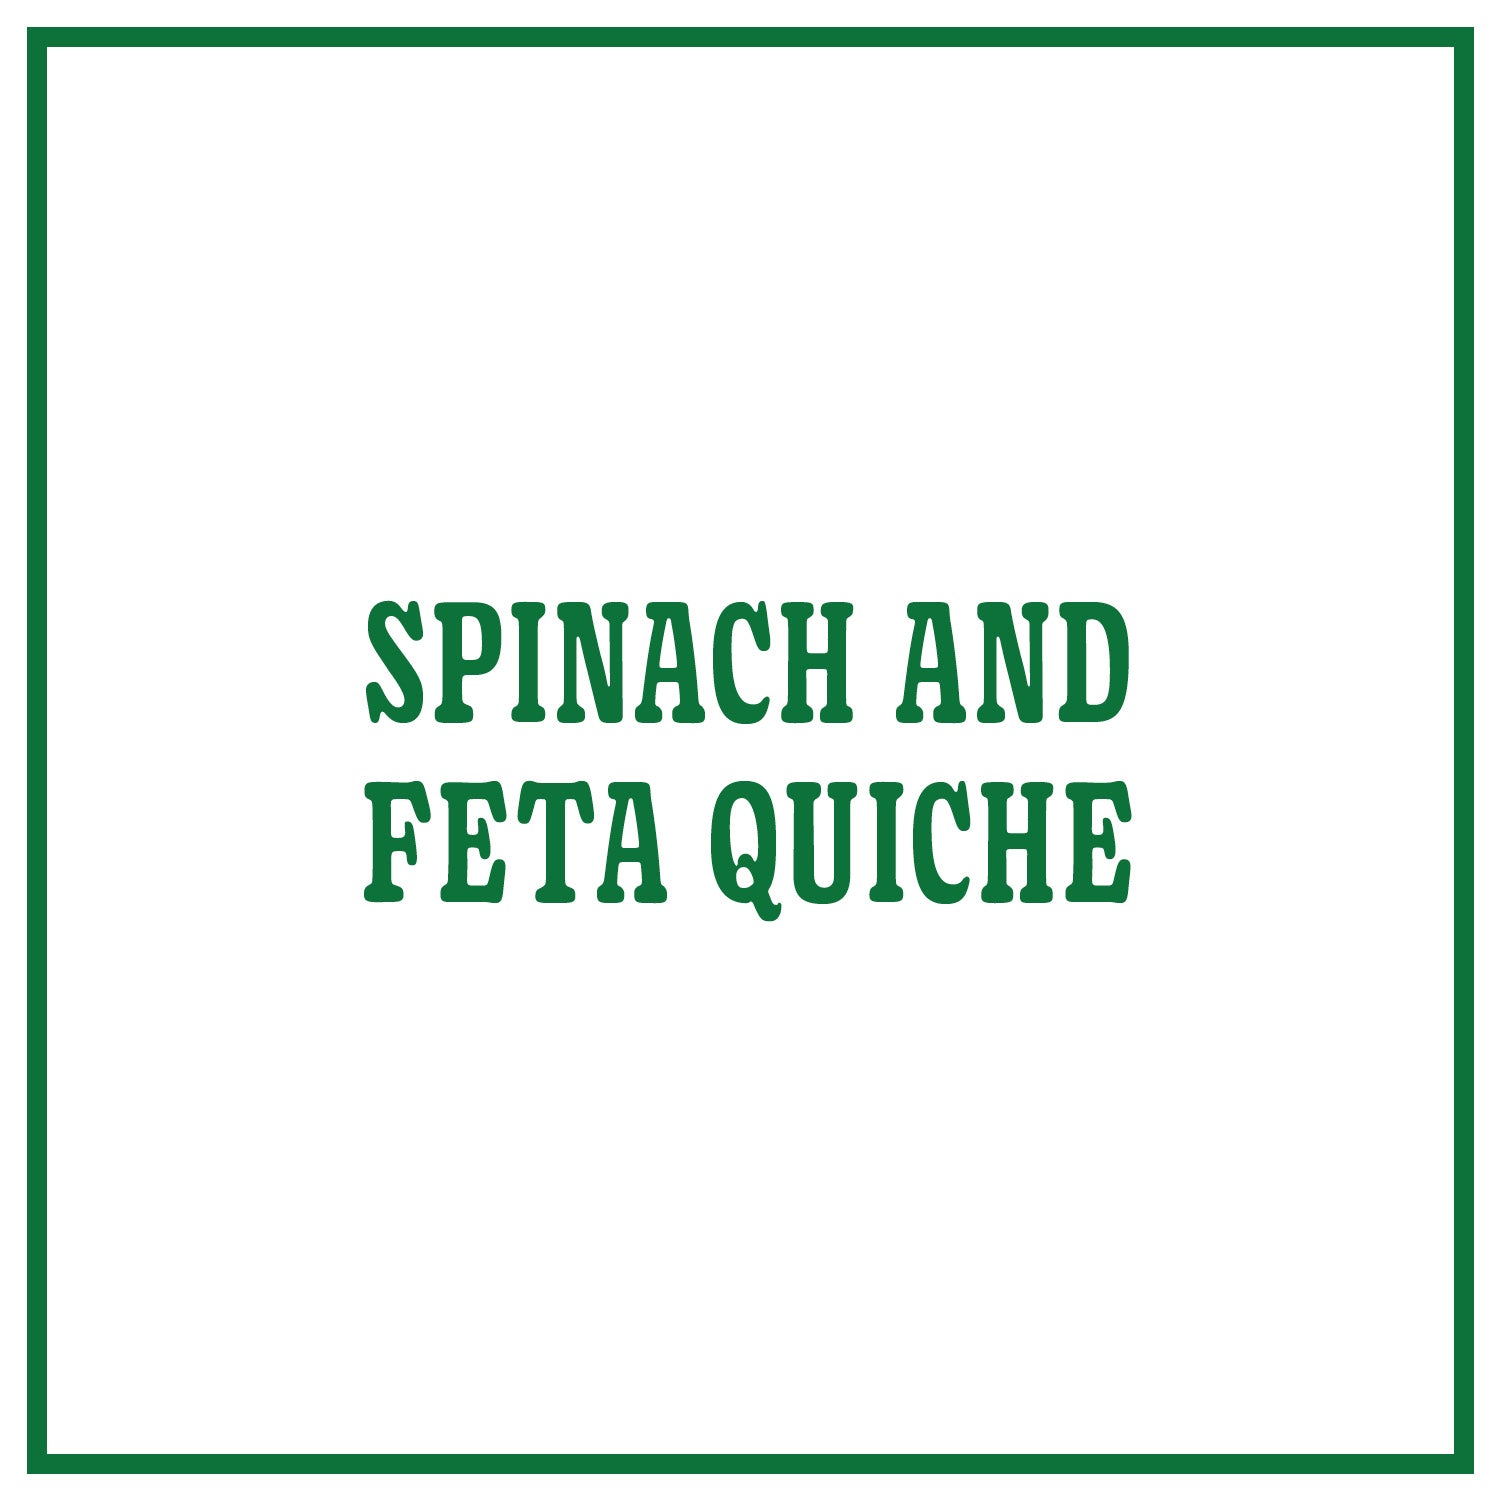 Spinach and Feta Quiche